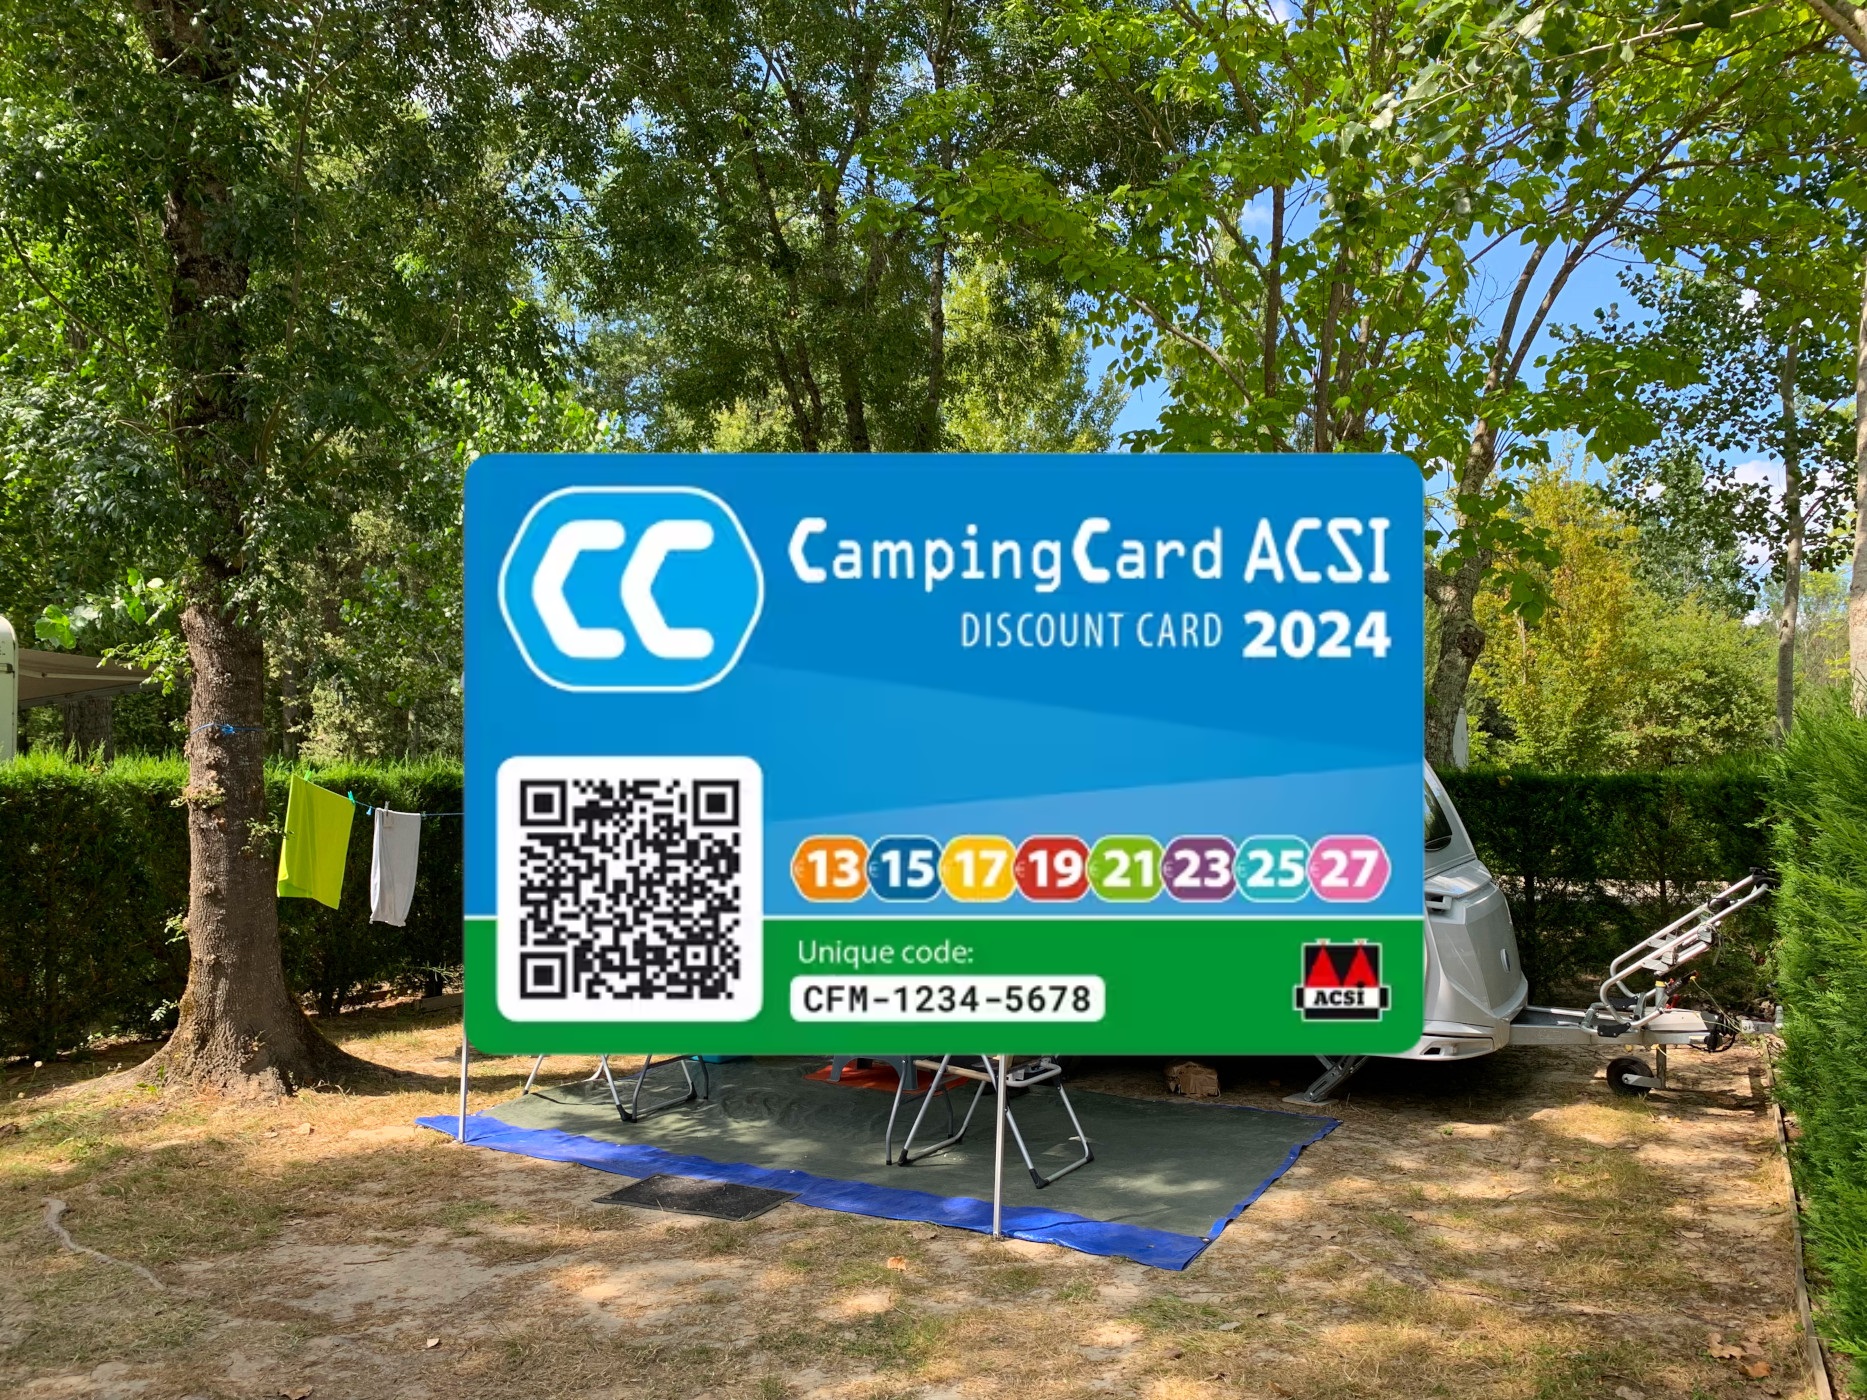 Paquete Campingcard Acsi - Previa Presentación De La Tarjeta De Descuento 2024